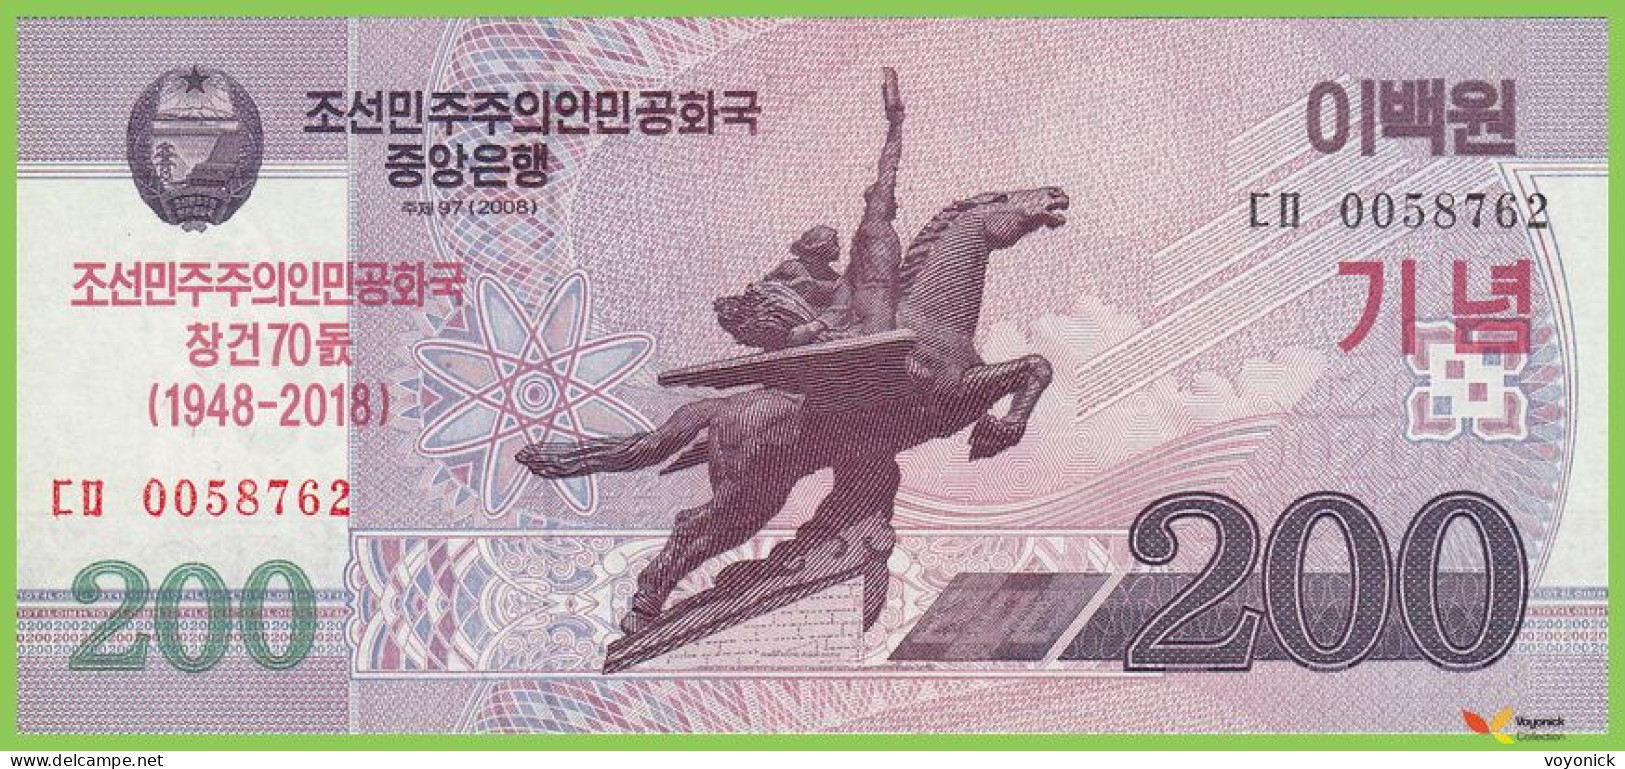 Voyo KOREA NORTH 200 Won 2018 PCSWB21 B360.2 ㄷㅁ UNC Commemorative - Corea Del Norte